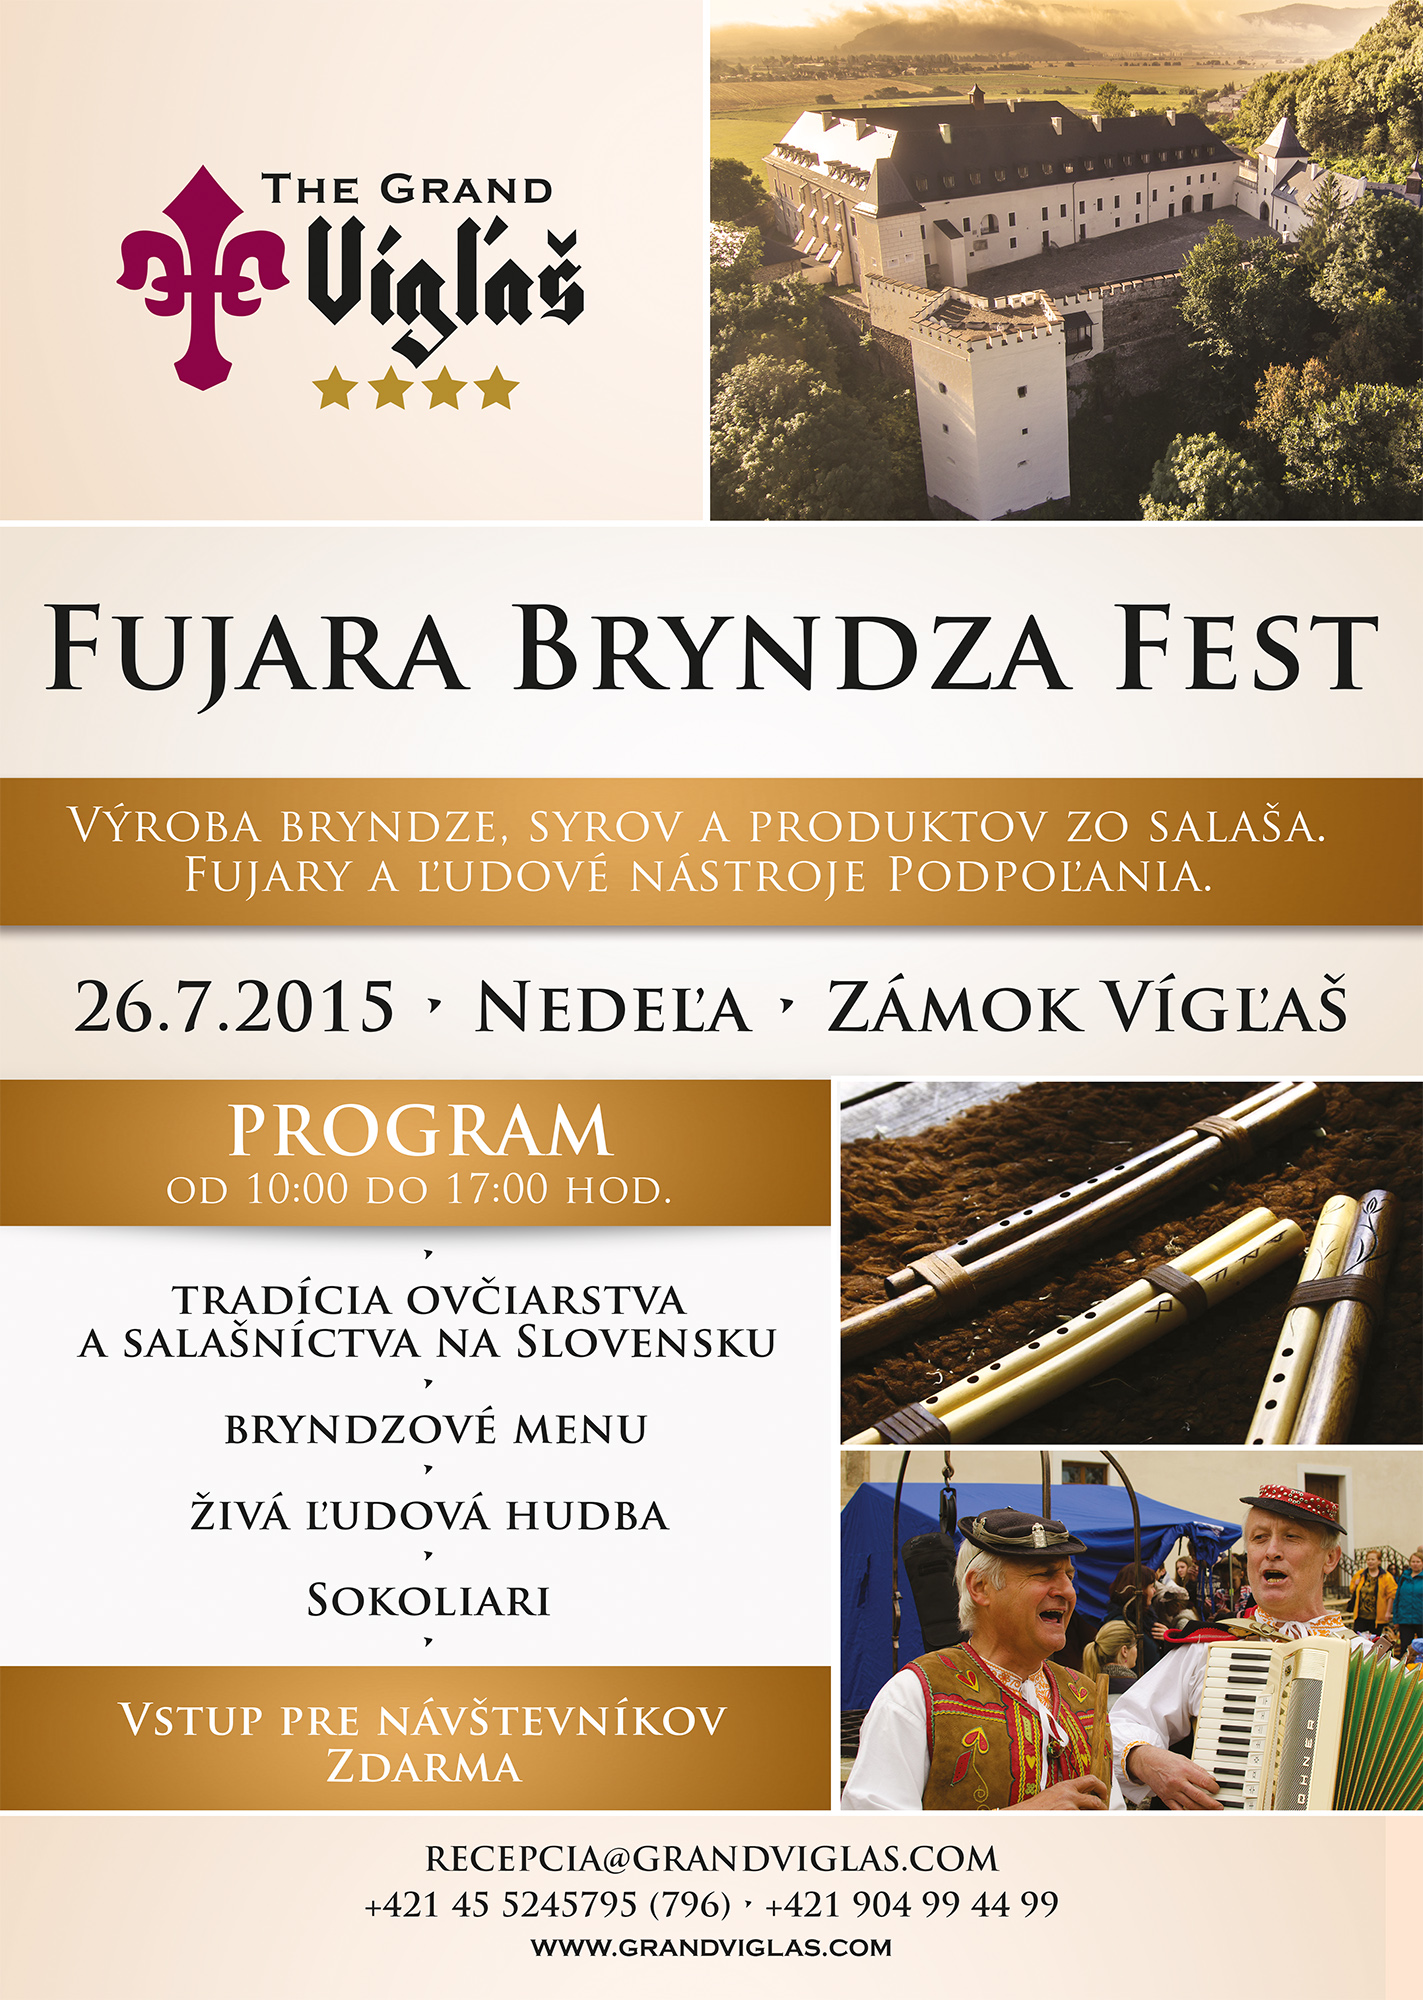 Fujara & Bryndza Fest -  Zmok Vga 2015